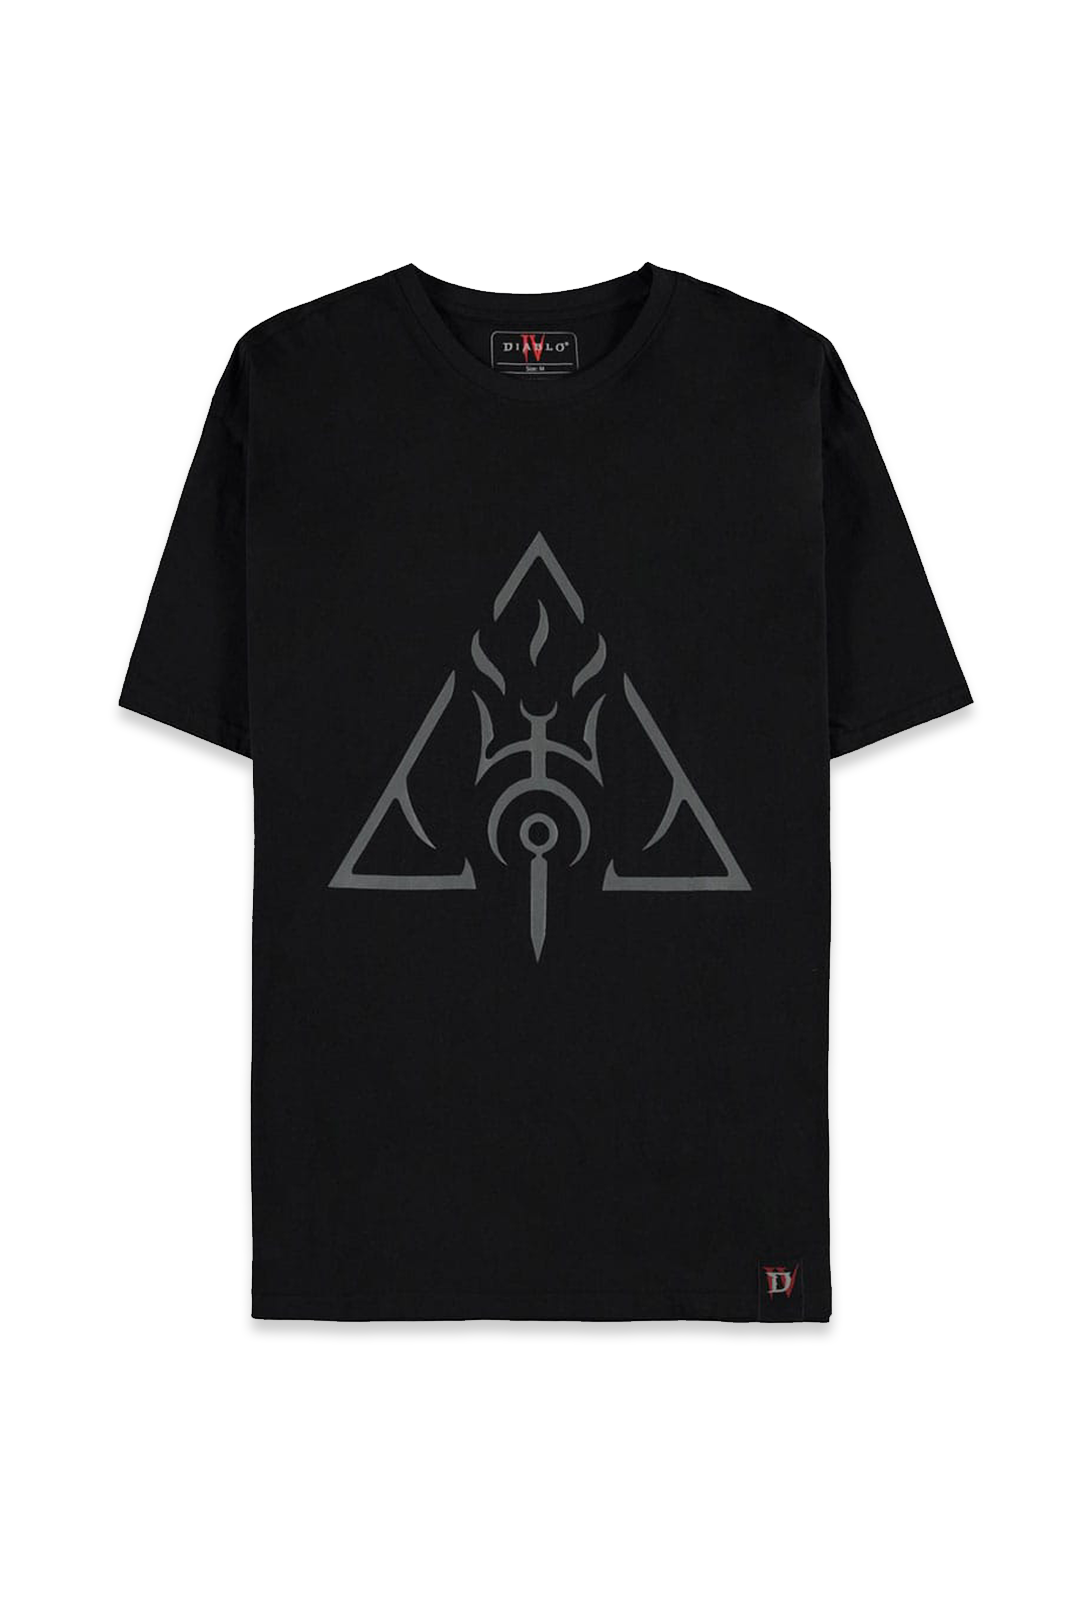 T-Shirt - Diablo IV -  All Seeing